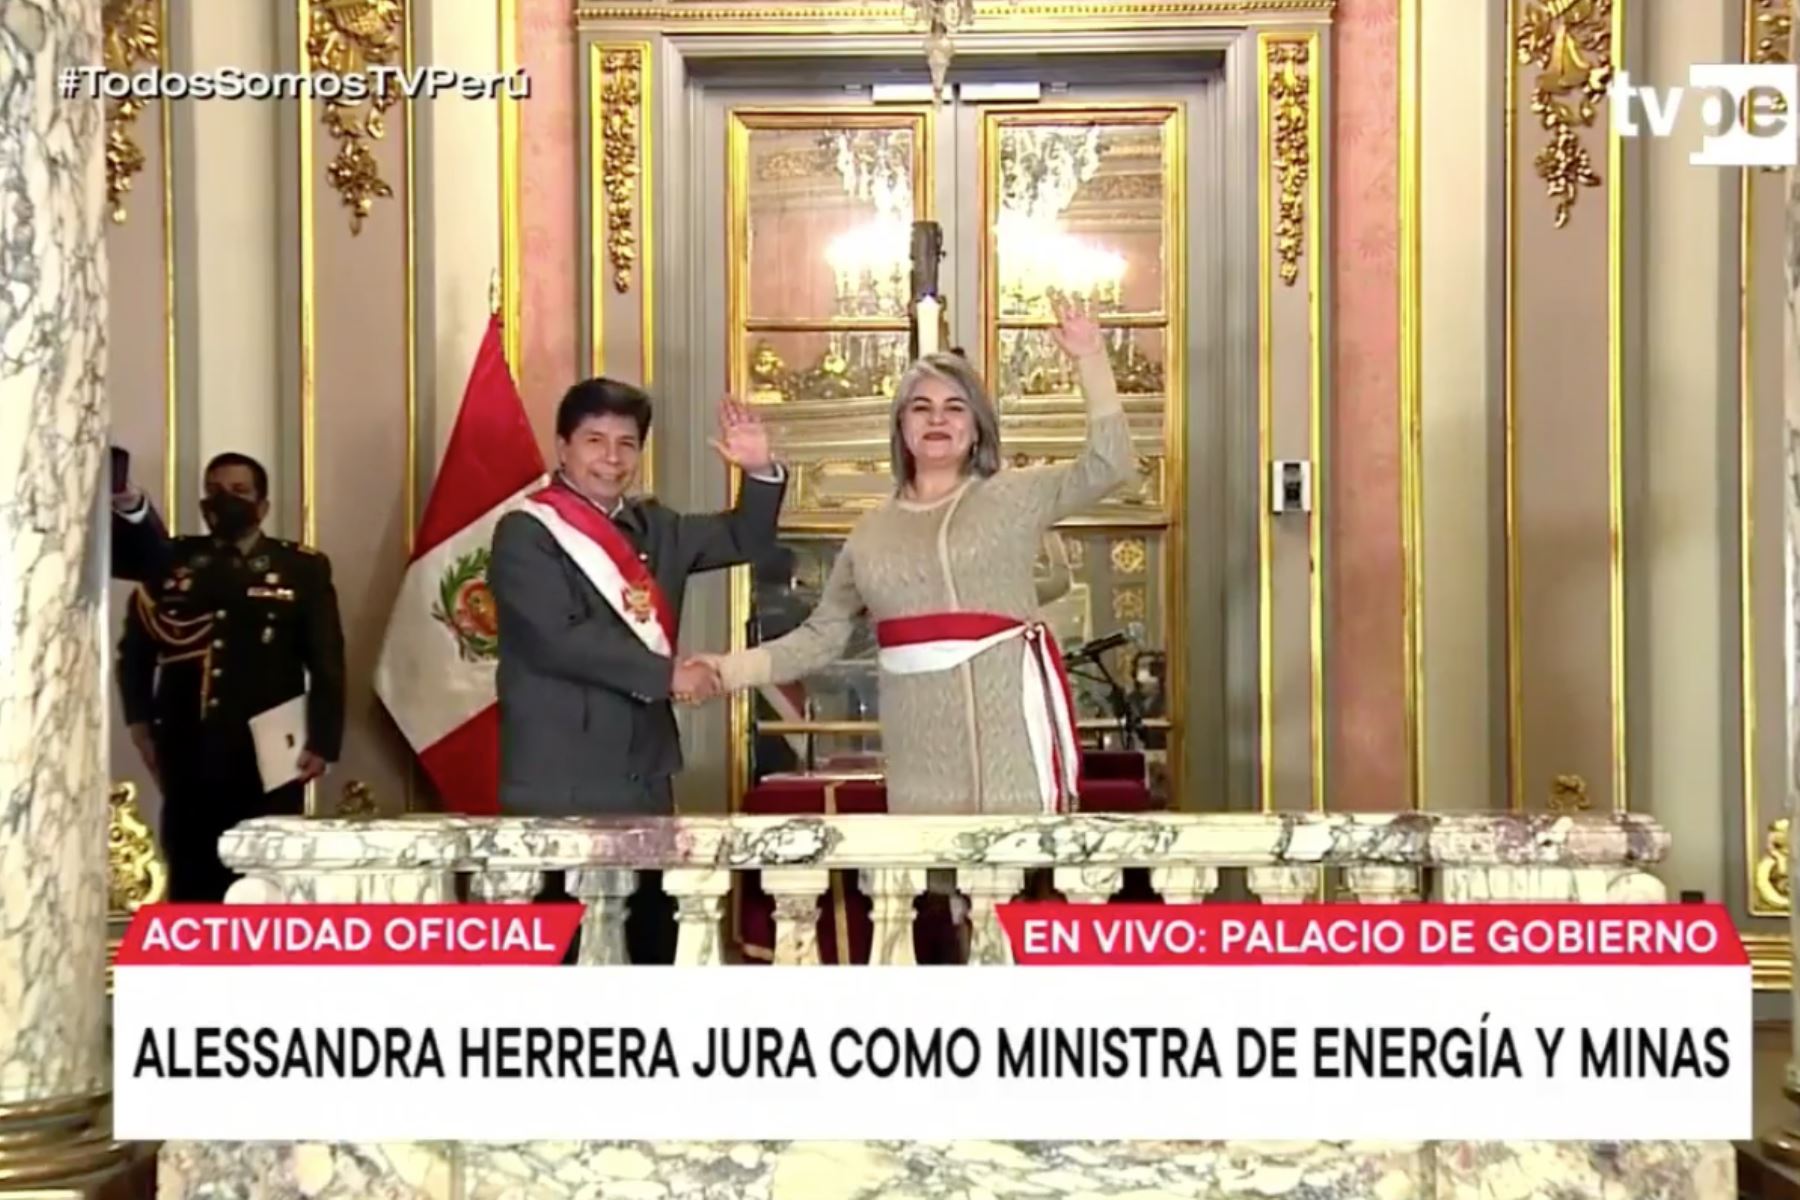 Alessandra Herrera Jara jura como ministra en la cartera de Energía y Minas